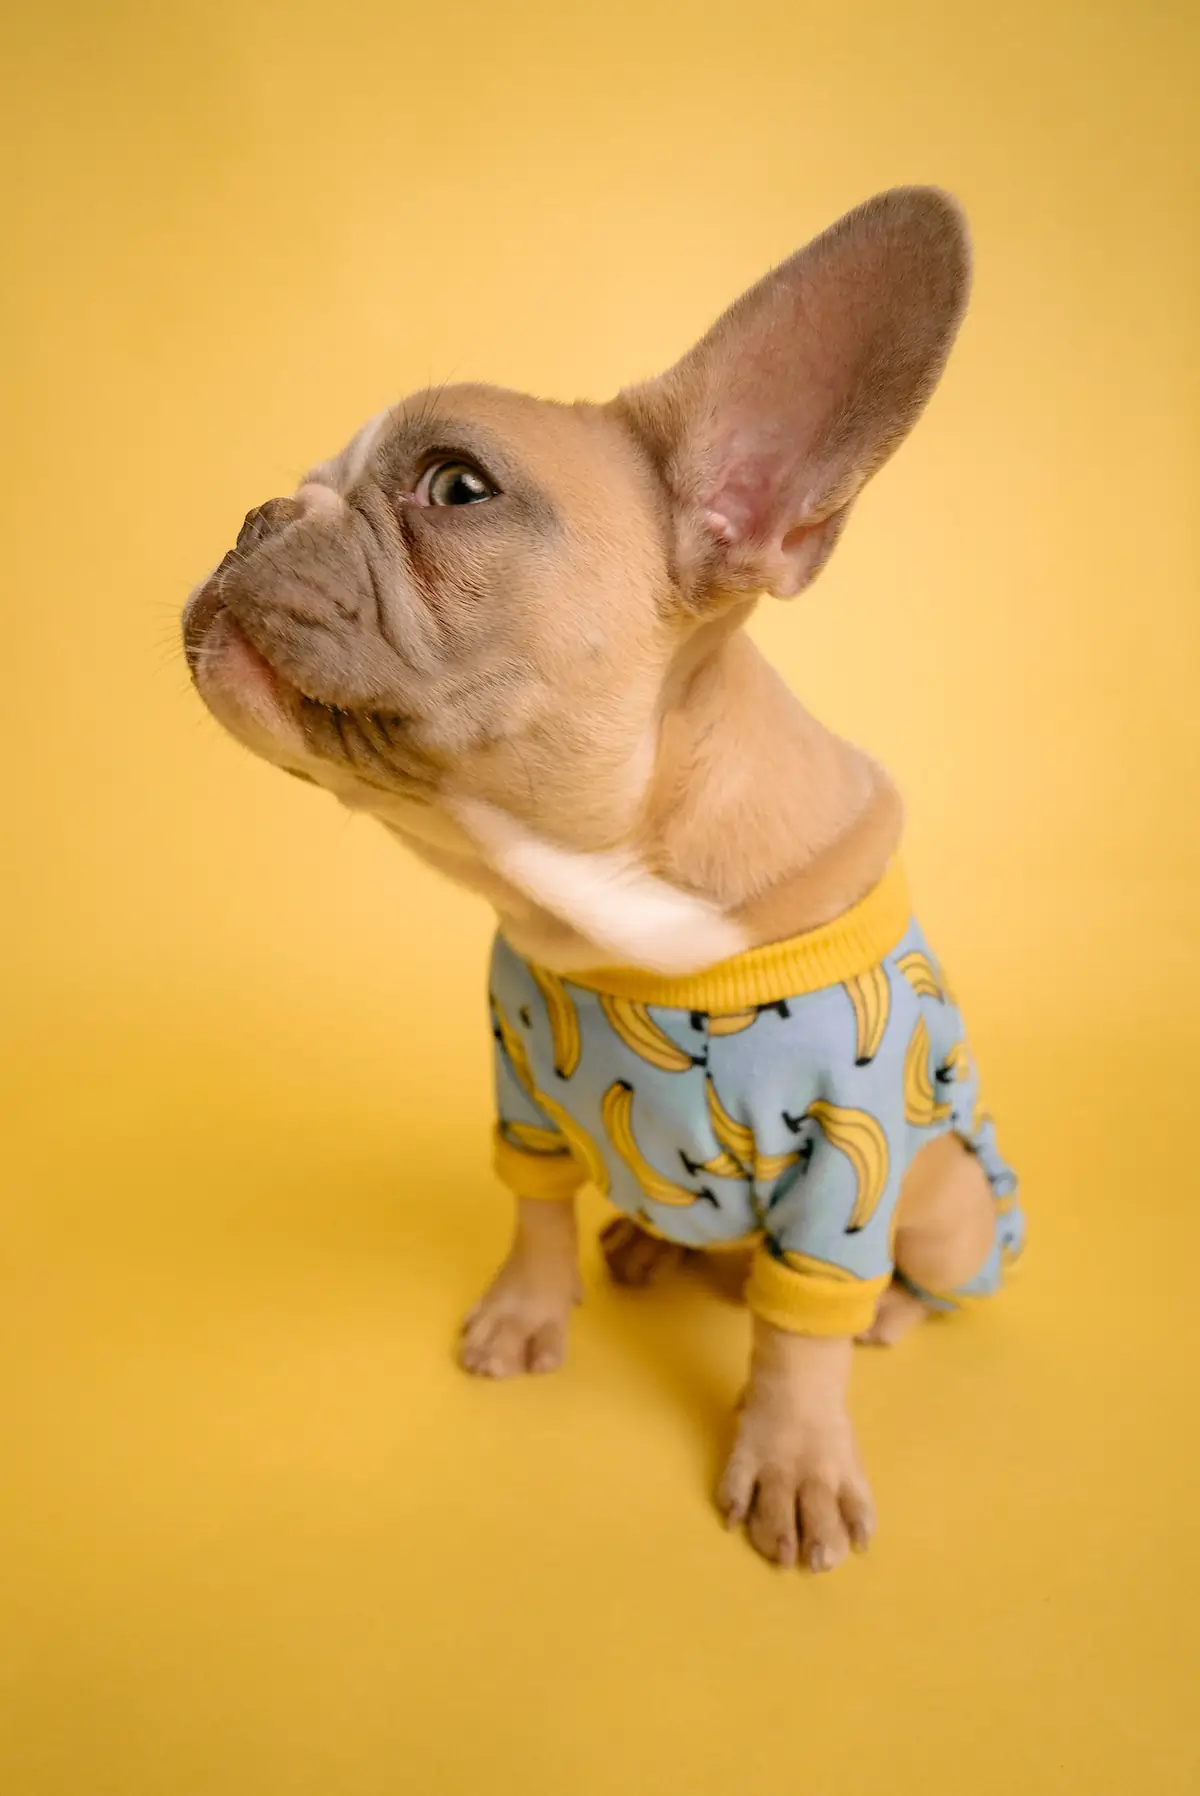 Französische Bulldogge im Bananen-shirt und großem Ohr seitlich.